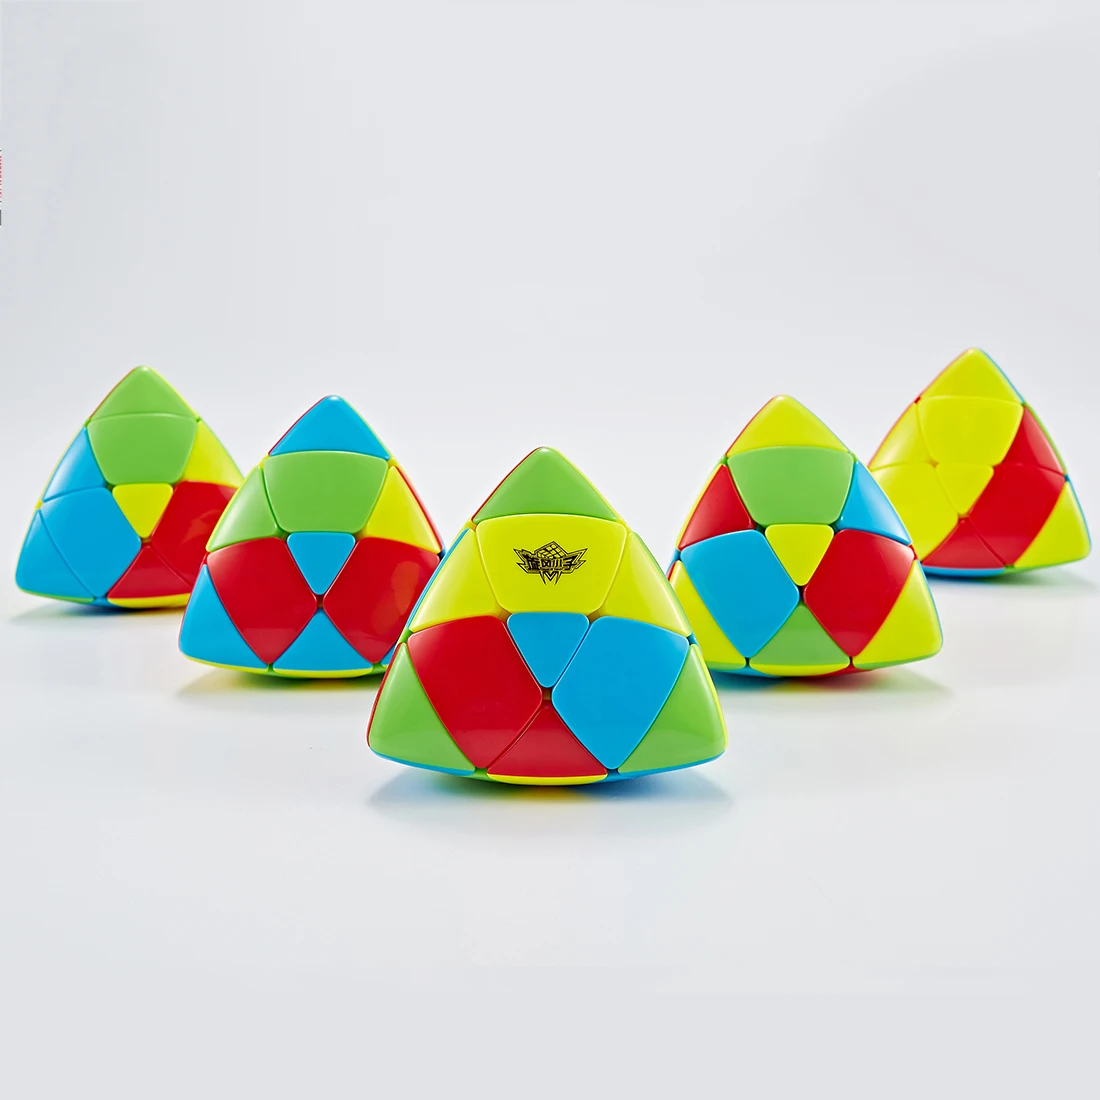 Cyclone Boys выпуклая Пирамидка форма магический куб головоломка игрушка для детей взрослый Тренировочный Набор